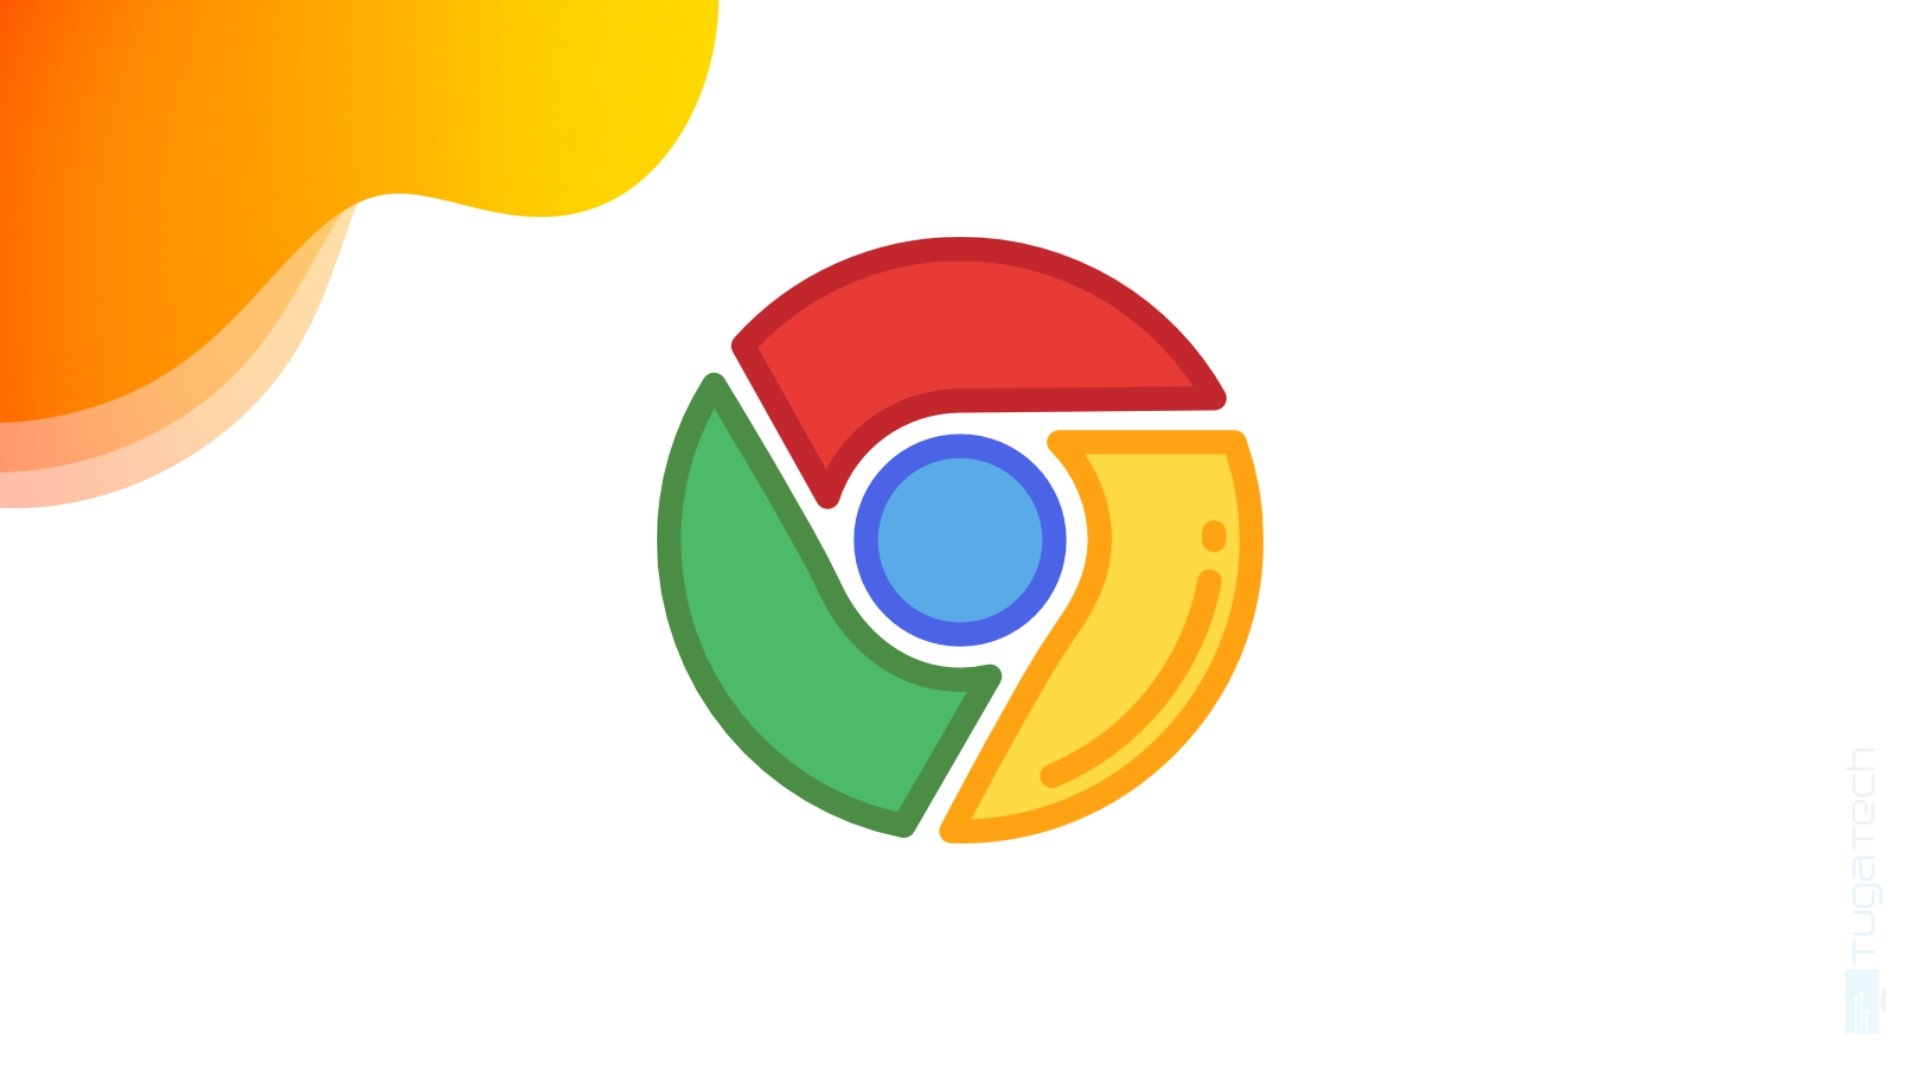 logo Chrome